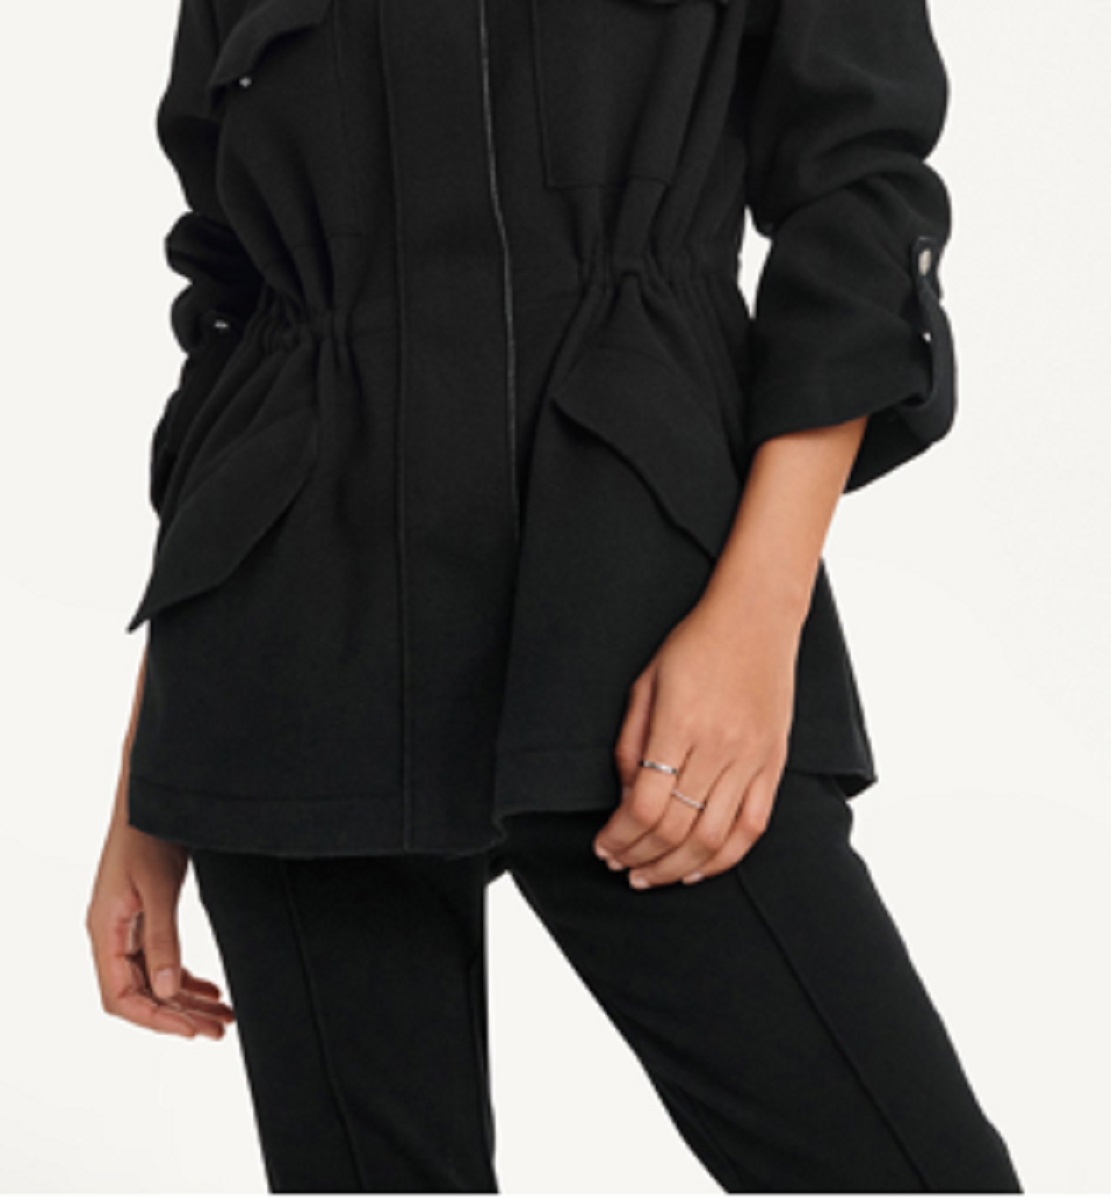 DKNY Women's Felt Cargo Jacket Black Size 0